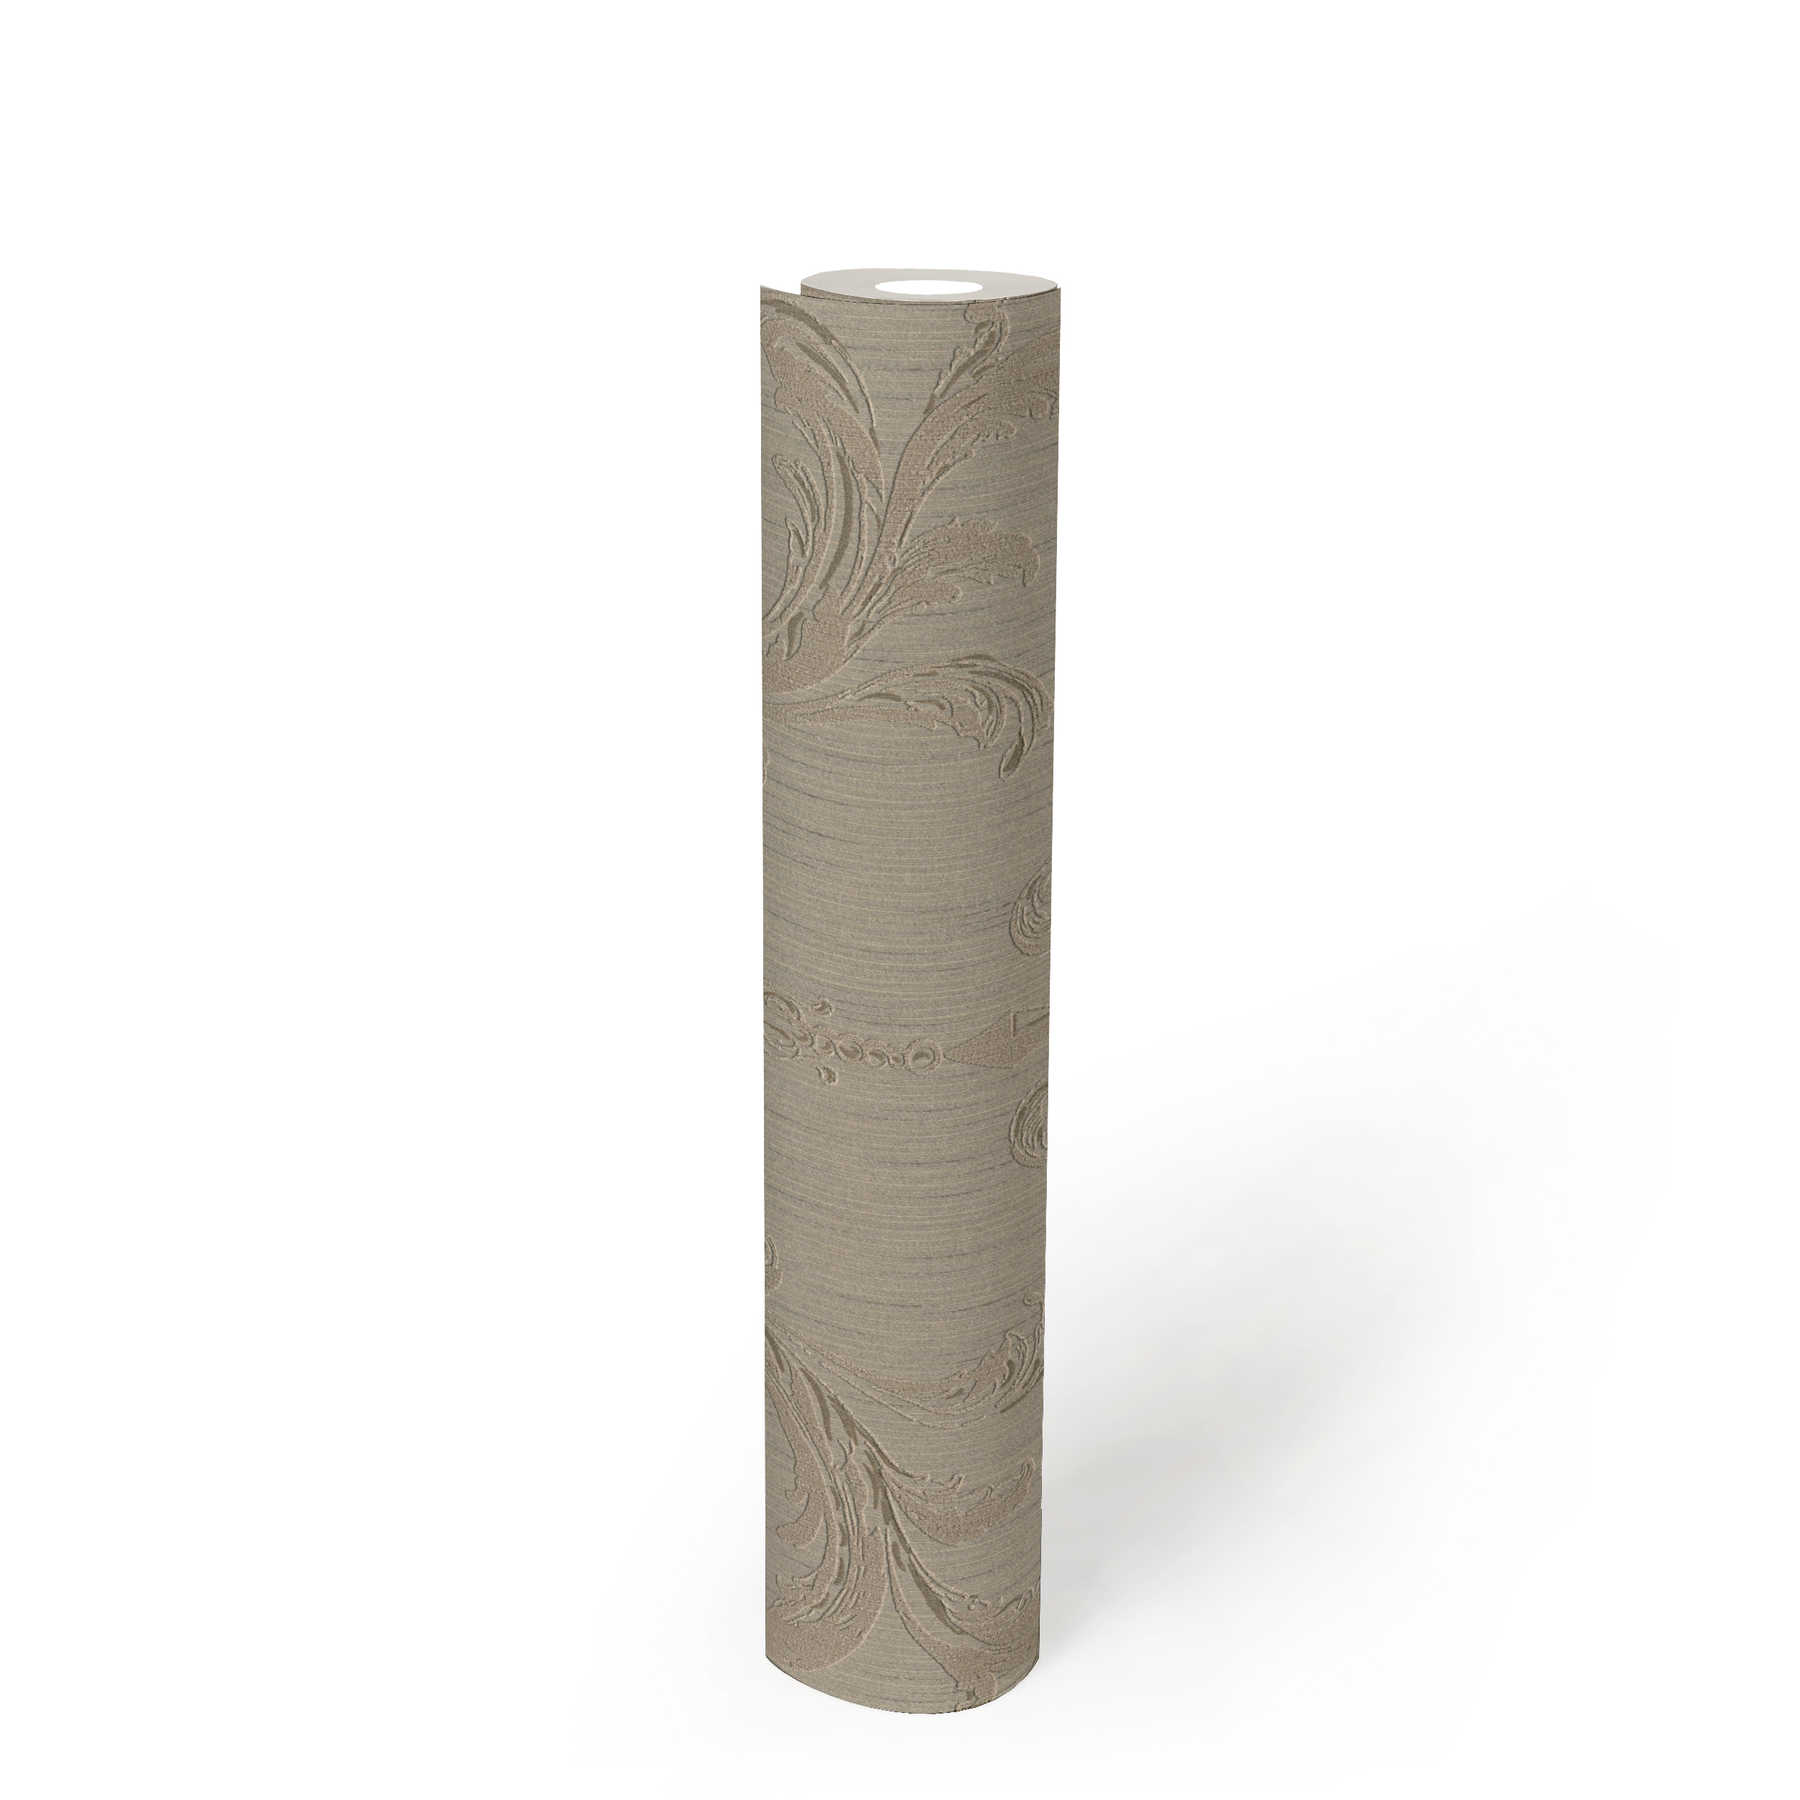             Elegante papel pintado con diseño de ornamentos de filigrana - marrón
        